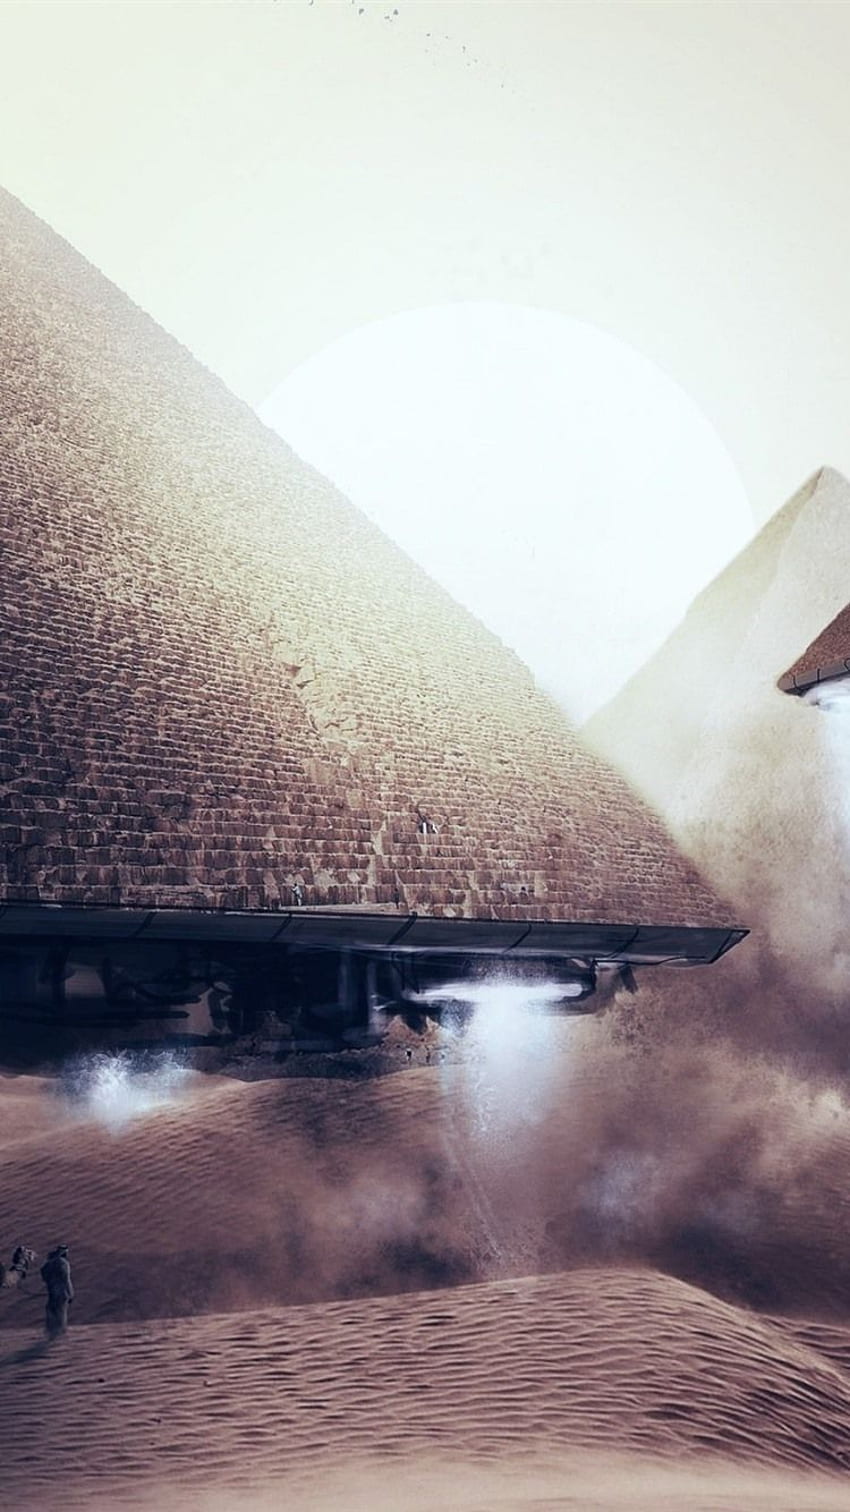 Bạn có tin vào người ngoài hành tinh? Nếu đúng vậy, hãy xem bức ảnh Pyramids UFO iPhone background của chúng tôi. Bức ảnh này làm cho bạn tin rằng có những sinh vật ngoài hành tinh đang quan sát chúng ta ngay từ phía trên cao.